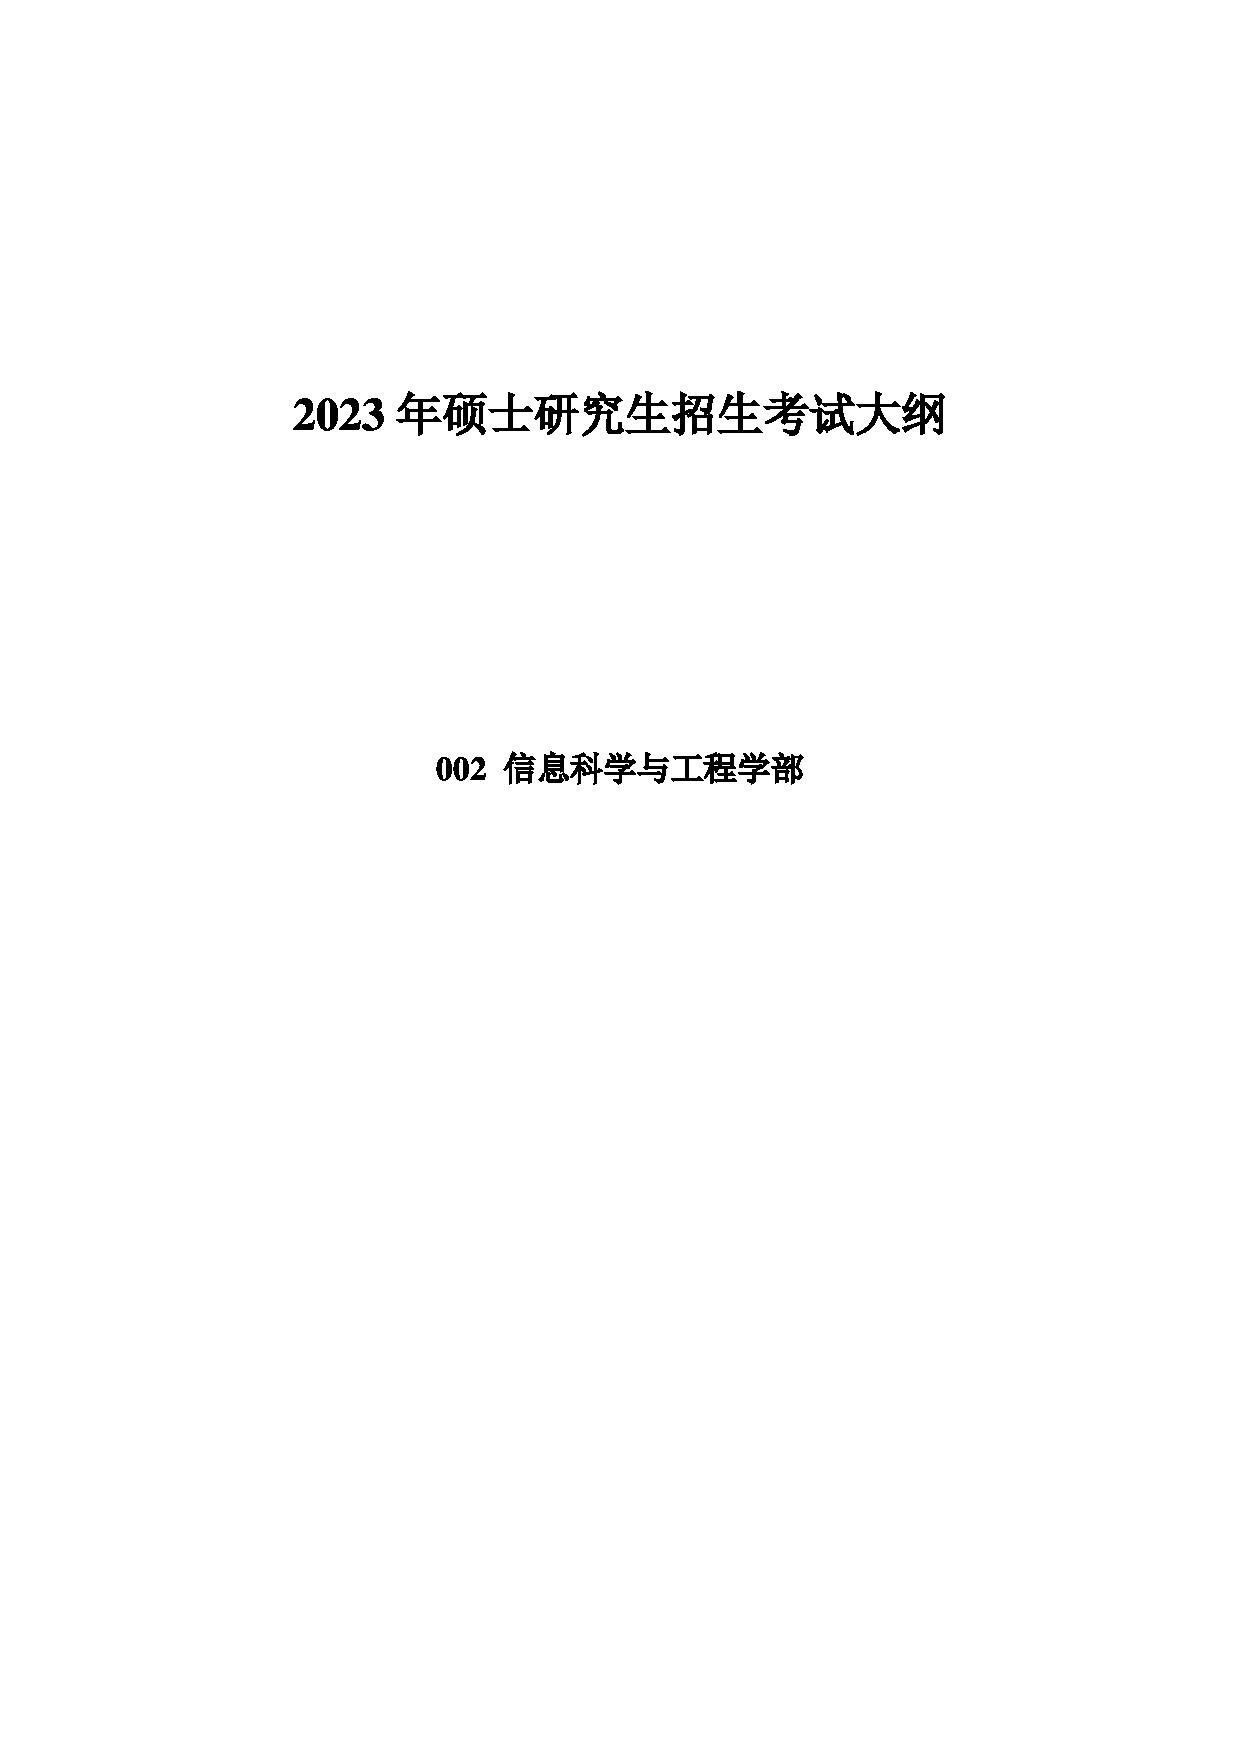 2023考研大纲：中国海洋大学2023年考研 002信息科学与工程学部 考试大纲第1页